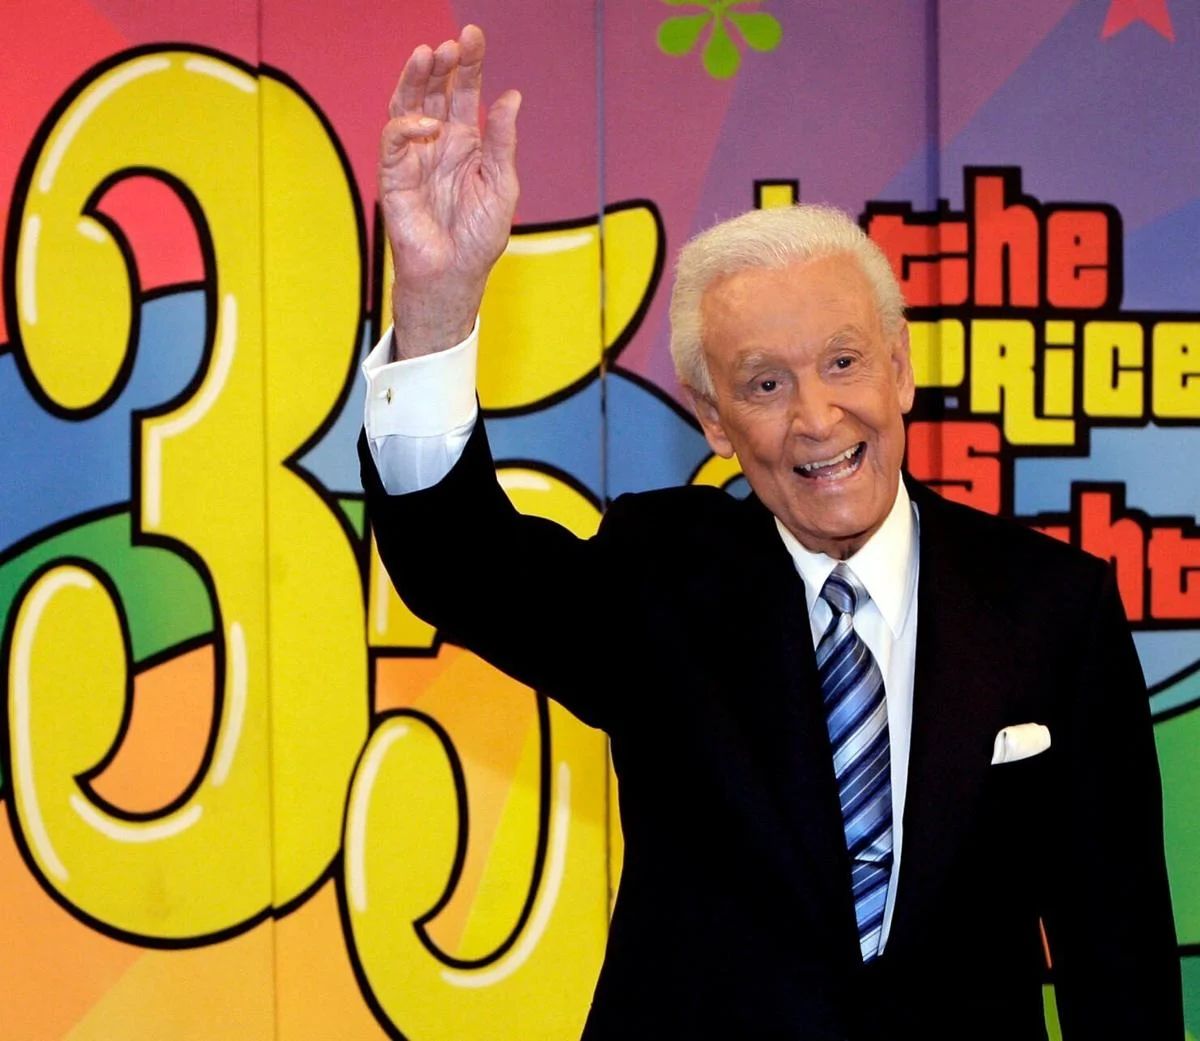 M. Barker a animé l'émission The Price Is Right pendant 35 ans avant de prendre sa retraite en 2007.